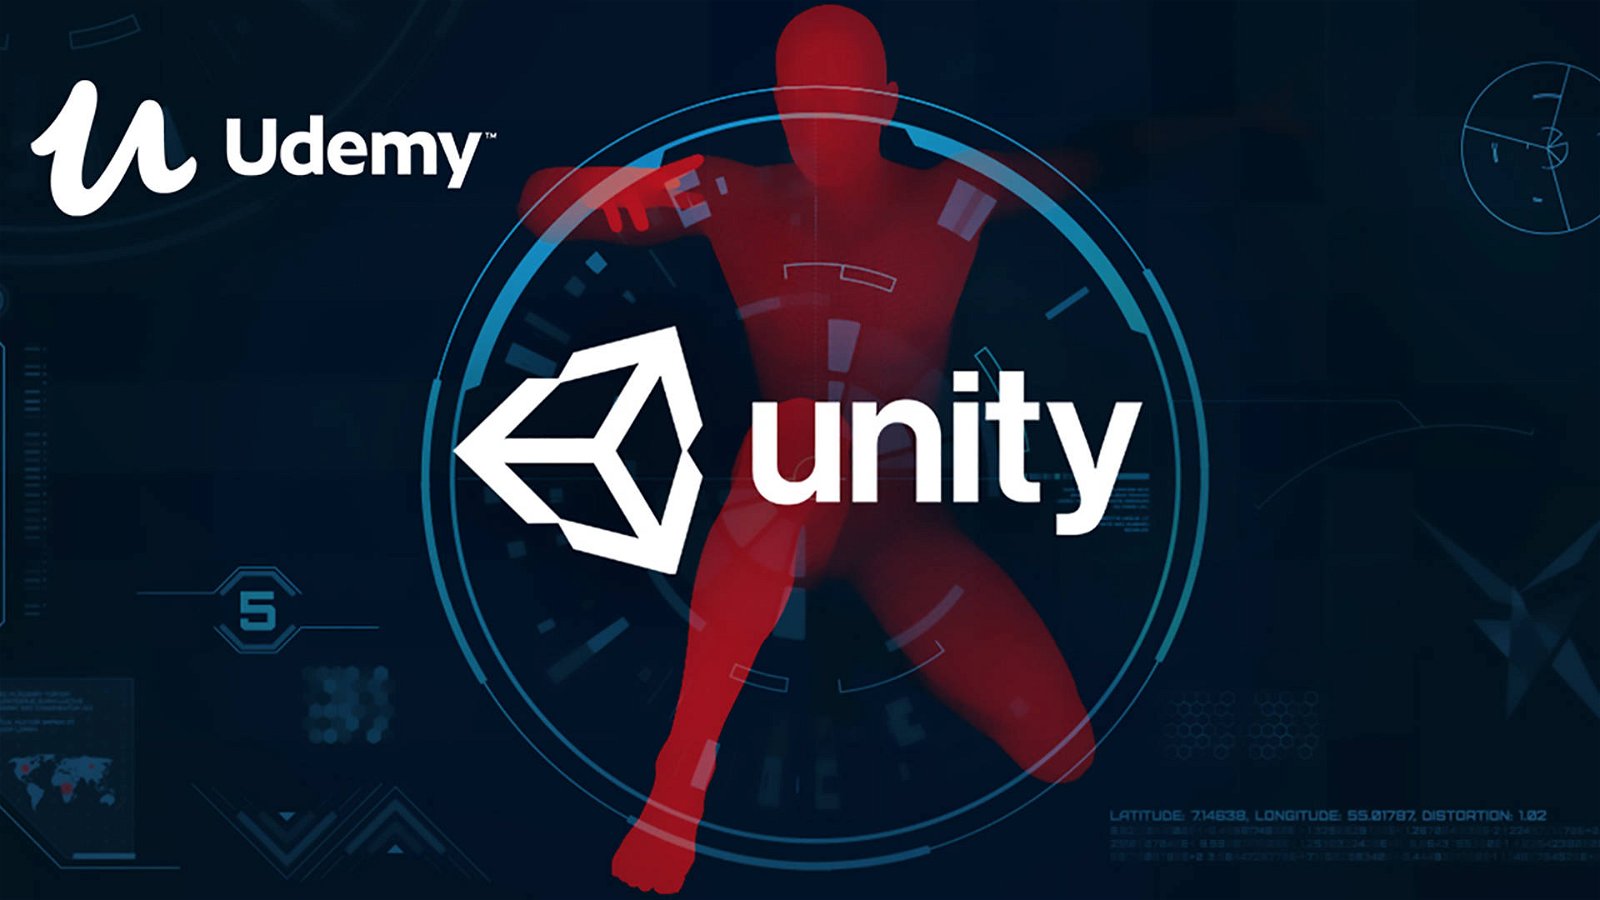 Immagine di Udemy, corso di Game Development professionale con Unity 3D e C# in offerta lancio a 9,99€ (sconto 95%)